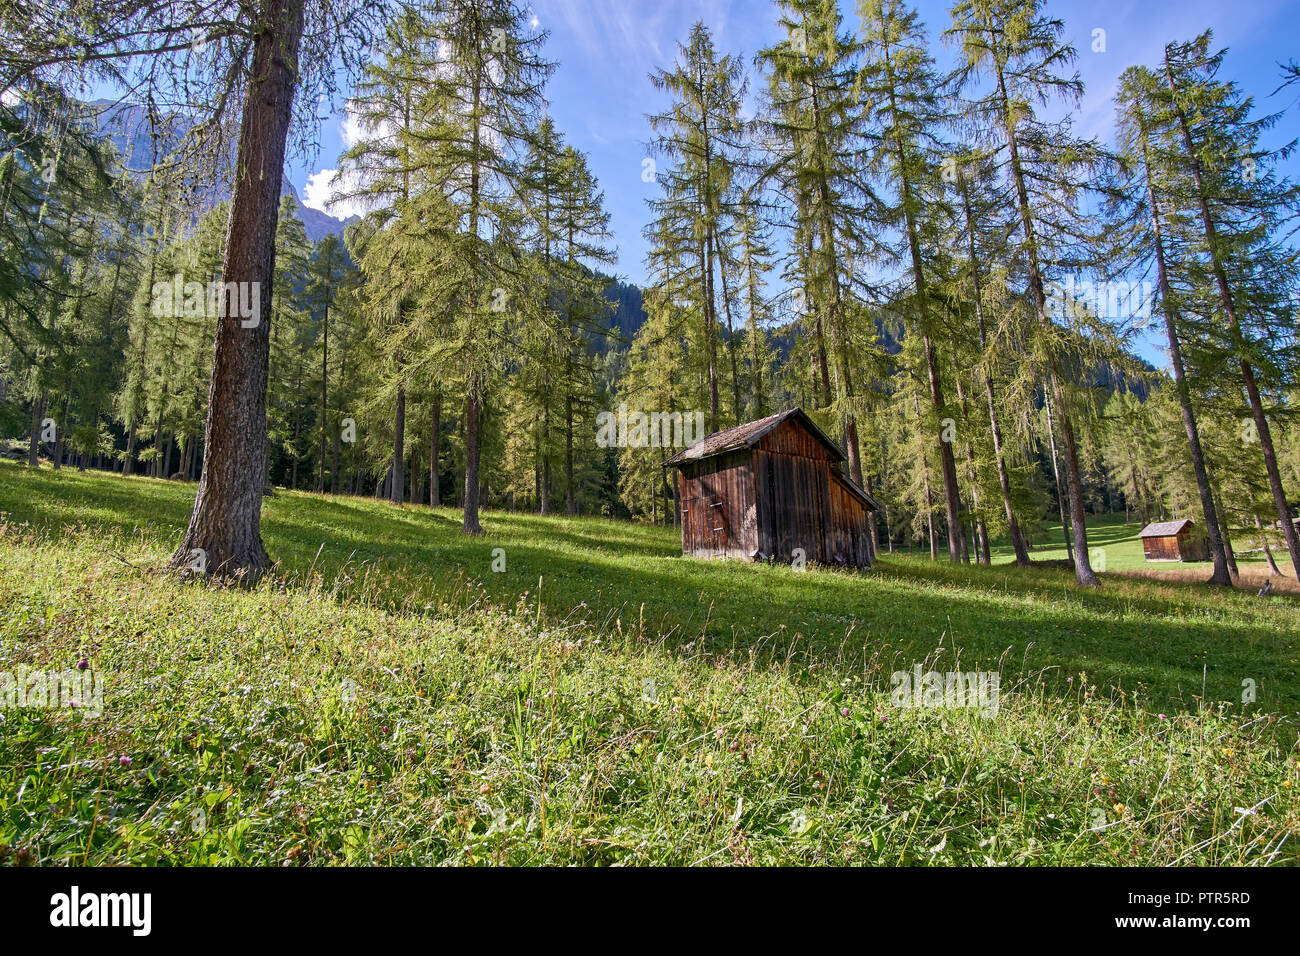 Les cabanes, prairie et forêt de pins le long de la Fischleintal (Val Fiscalina), Naturpark Sextner Dolomiten (Parco Naturale Dolomiti di Sesto, Italie) Banque D'Images